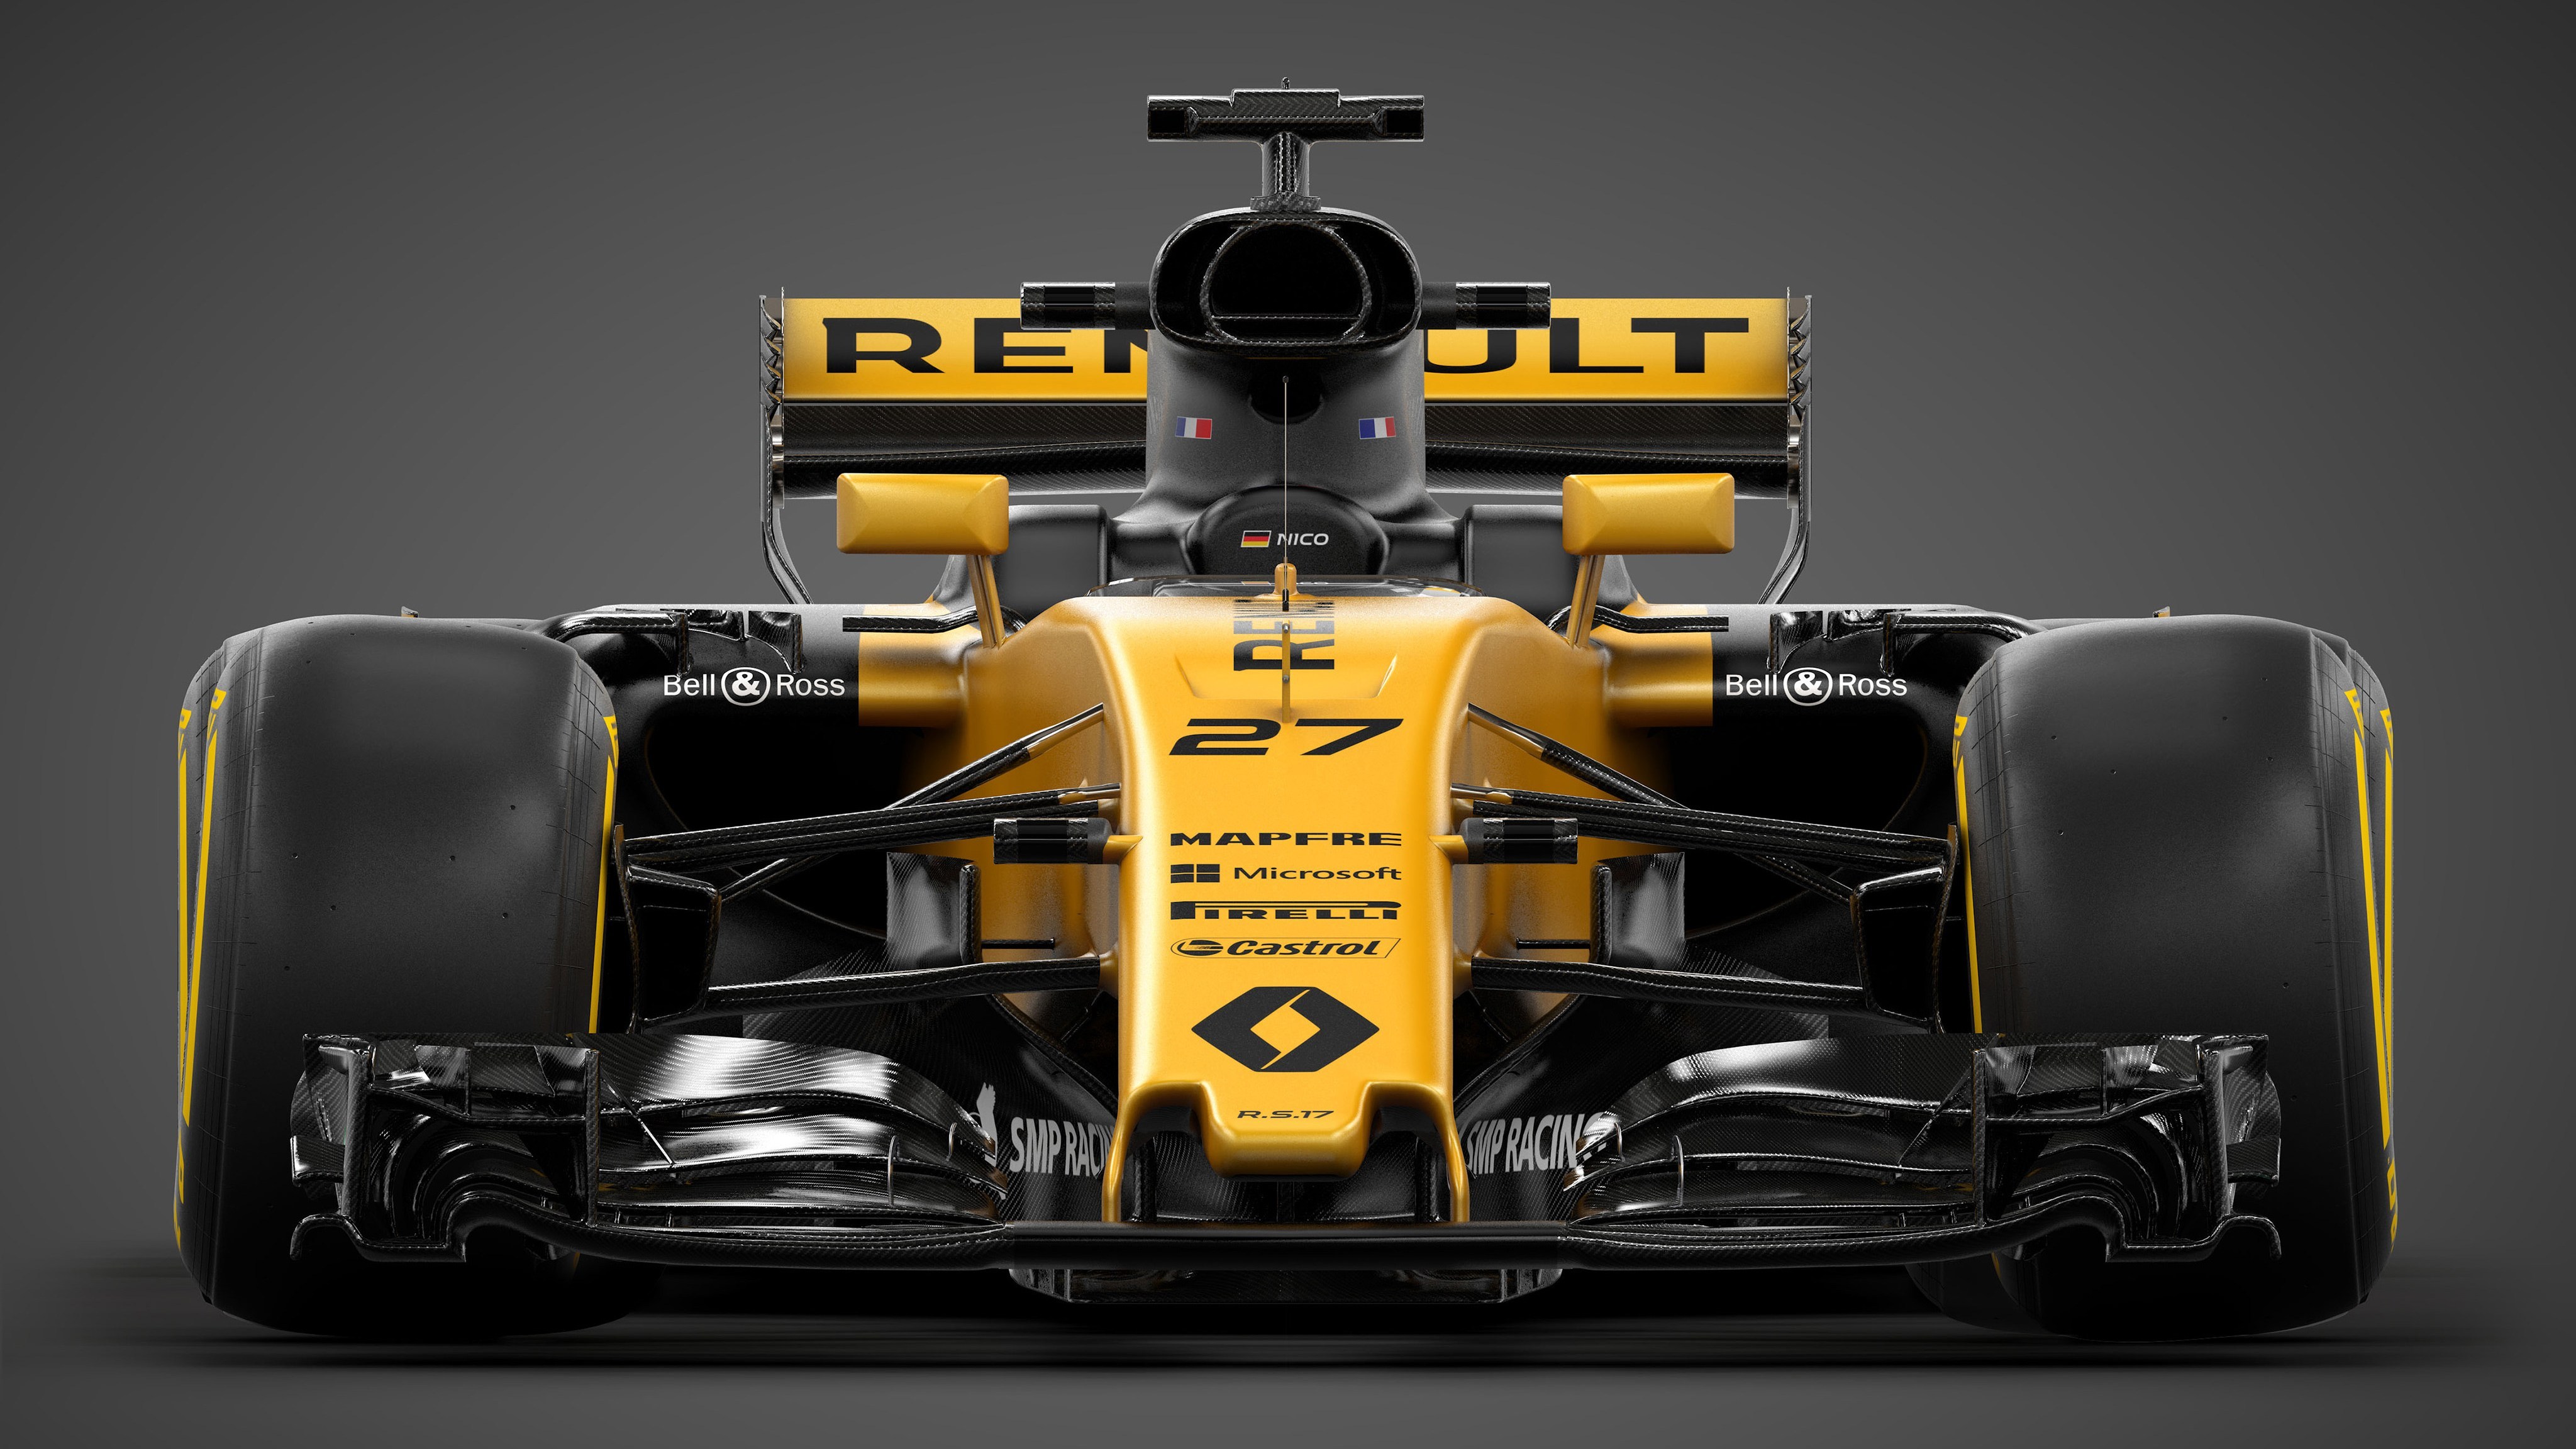 2017 Renault Rs17 Formula 1 Car Wallpaper Hd Wallpapers - Ultra Hd Car 4k Wallpaper For Pc - HD Wallpaper 